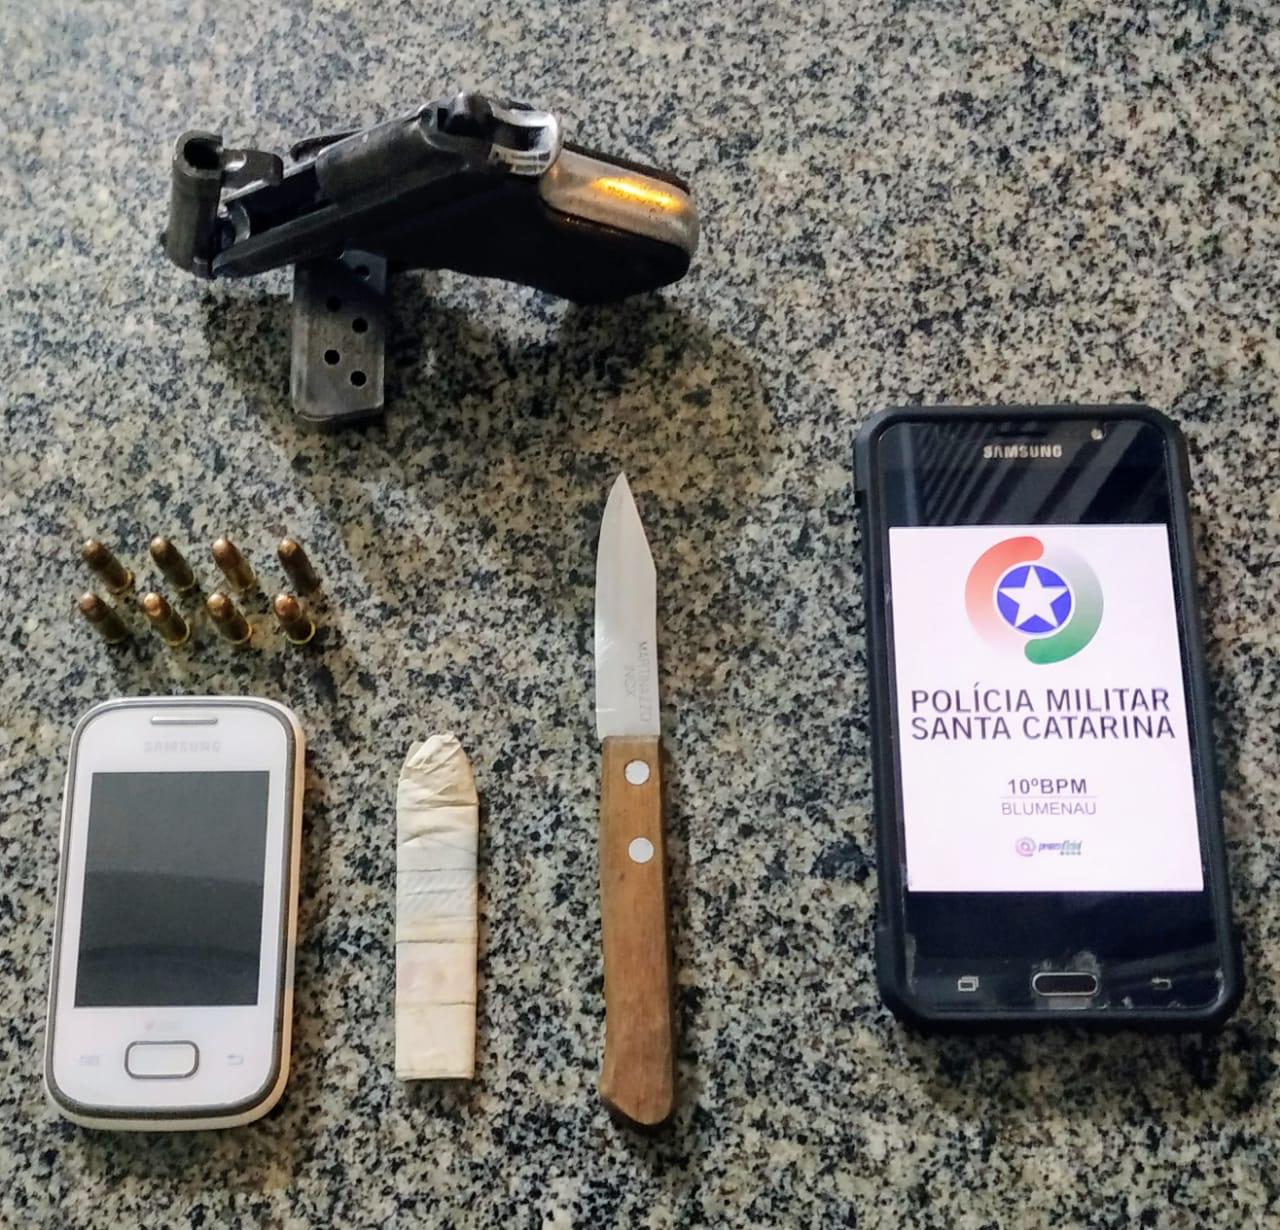 Celular, faca e uma arma de fogo foram apreendidas - foto da PMSC